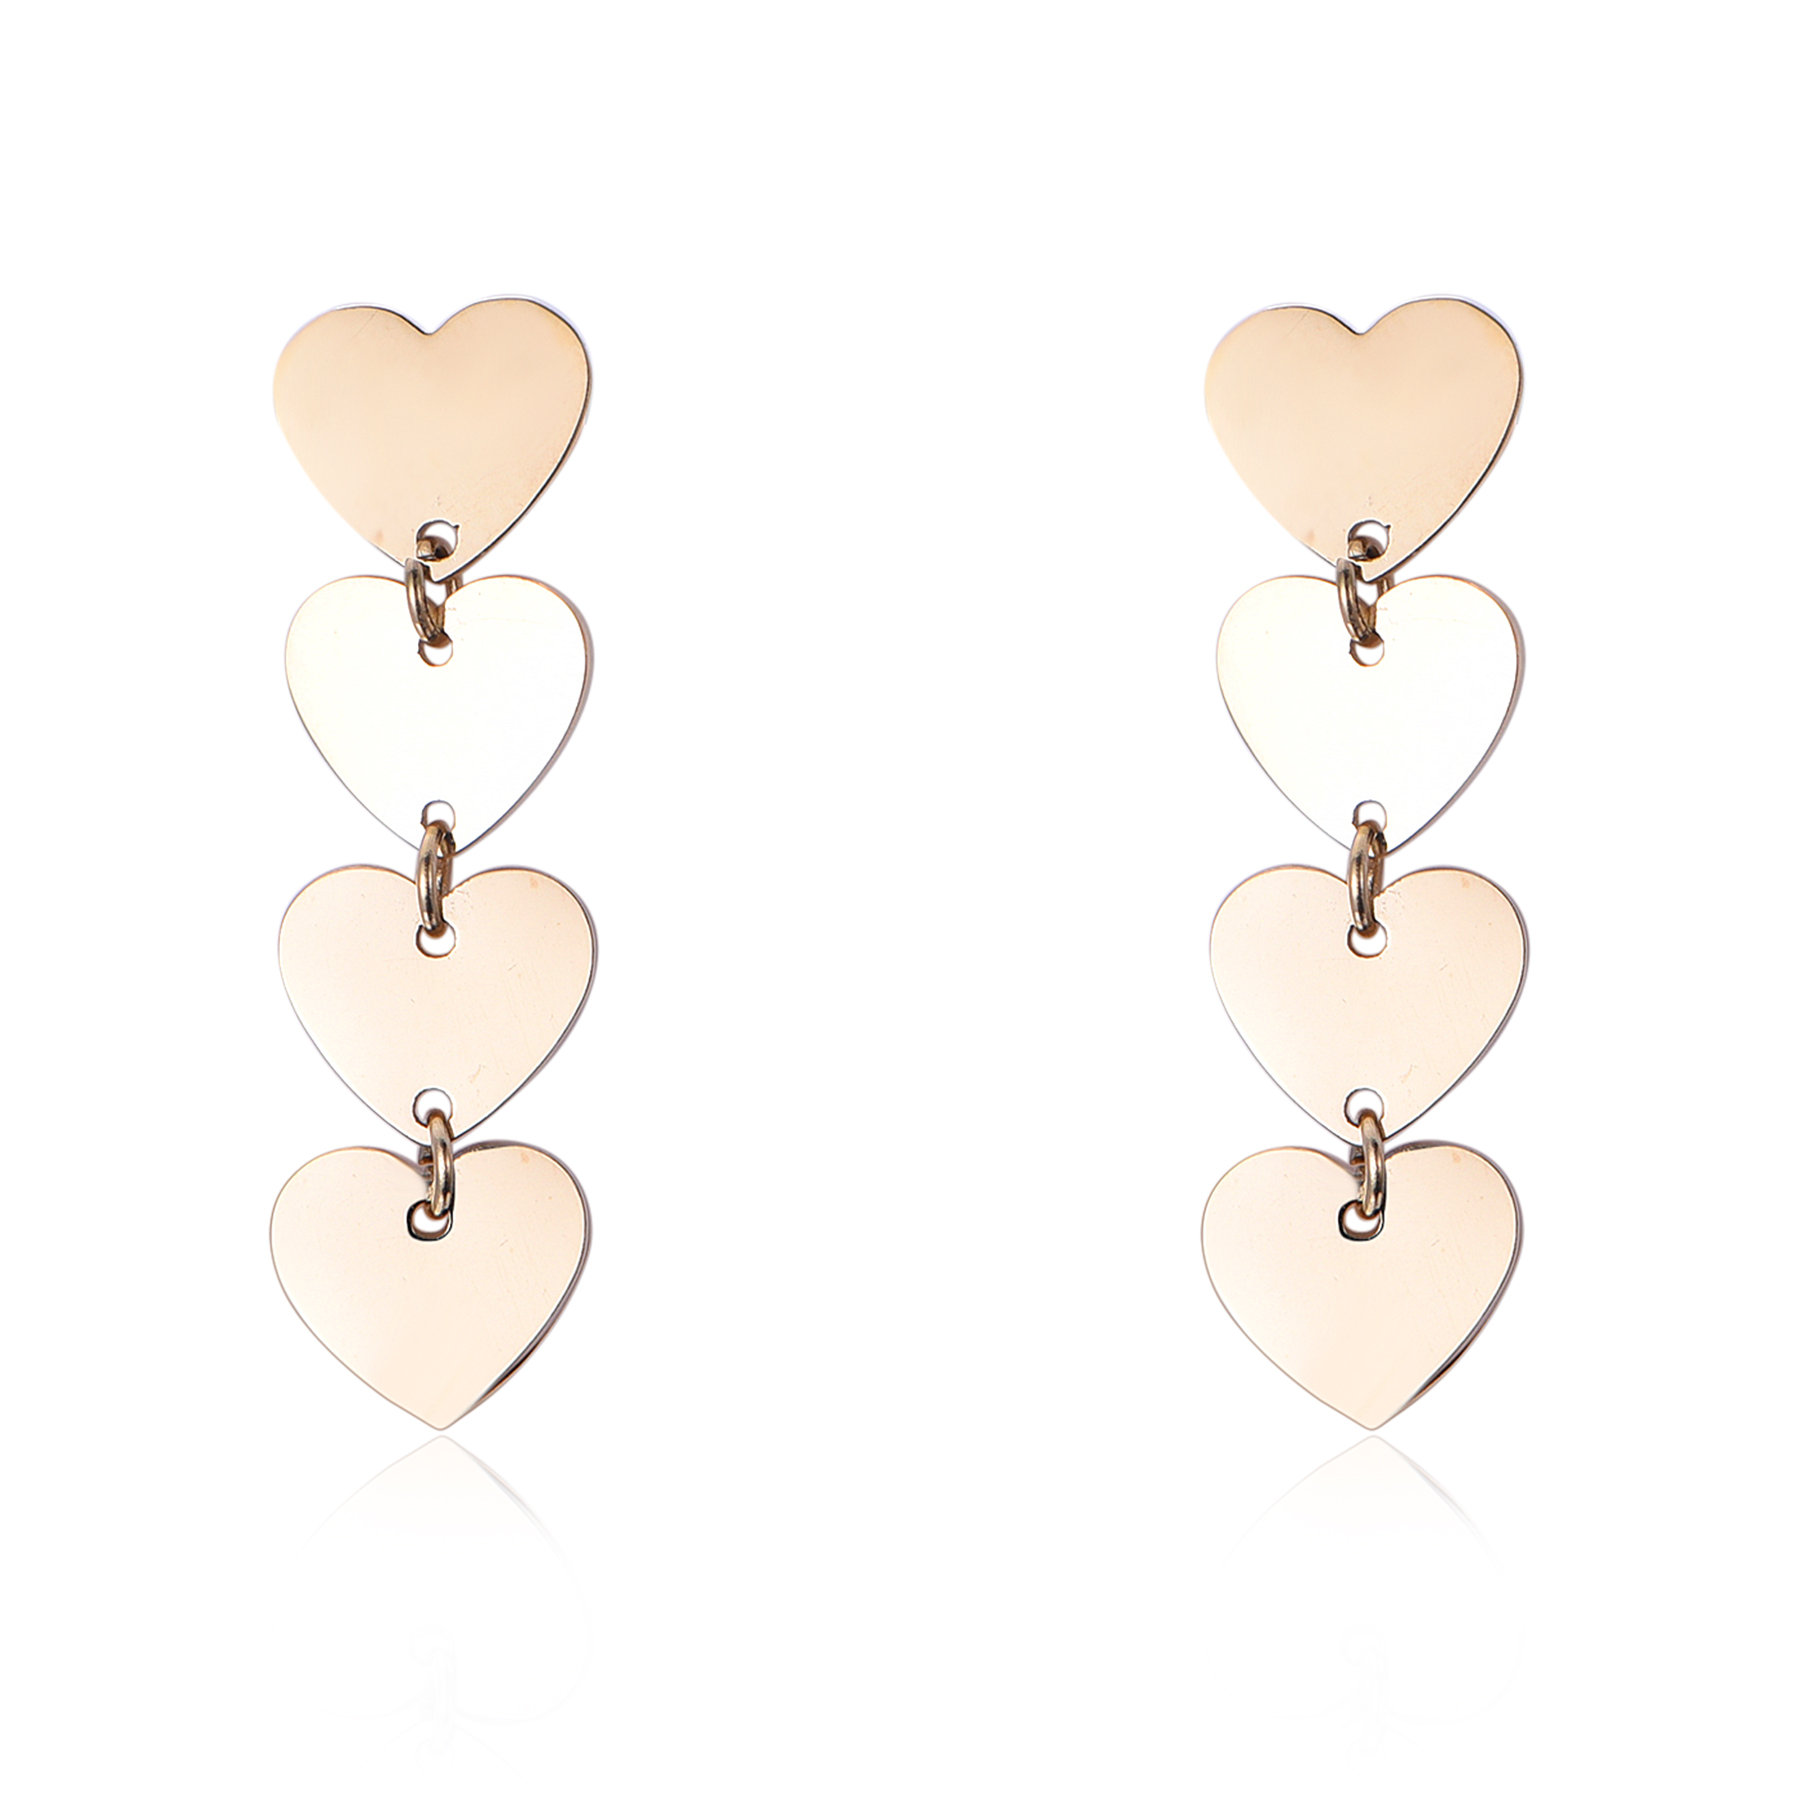 Stainless Steel Handmade Hearts Dangle Earrings EJ1-08